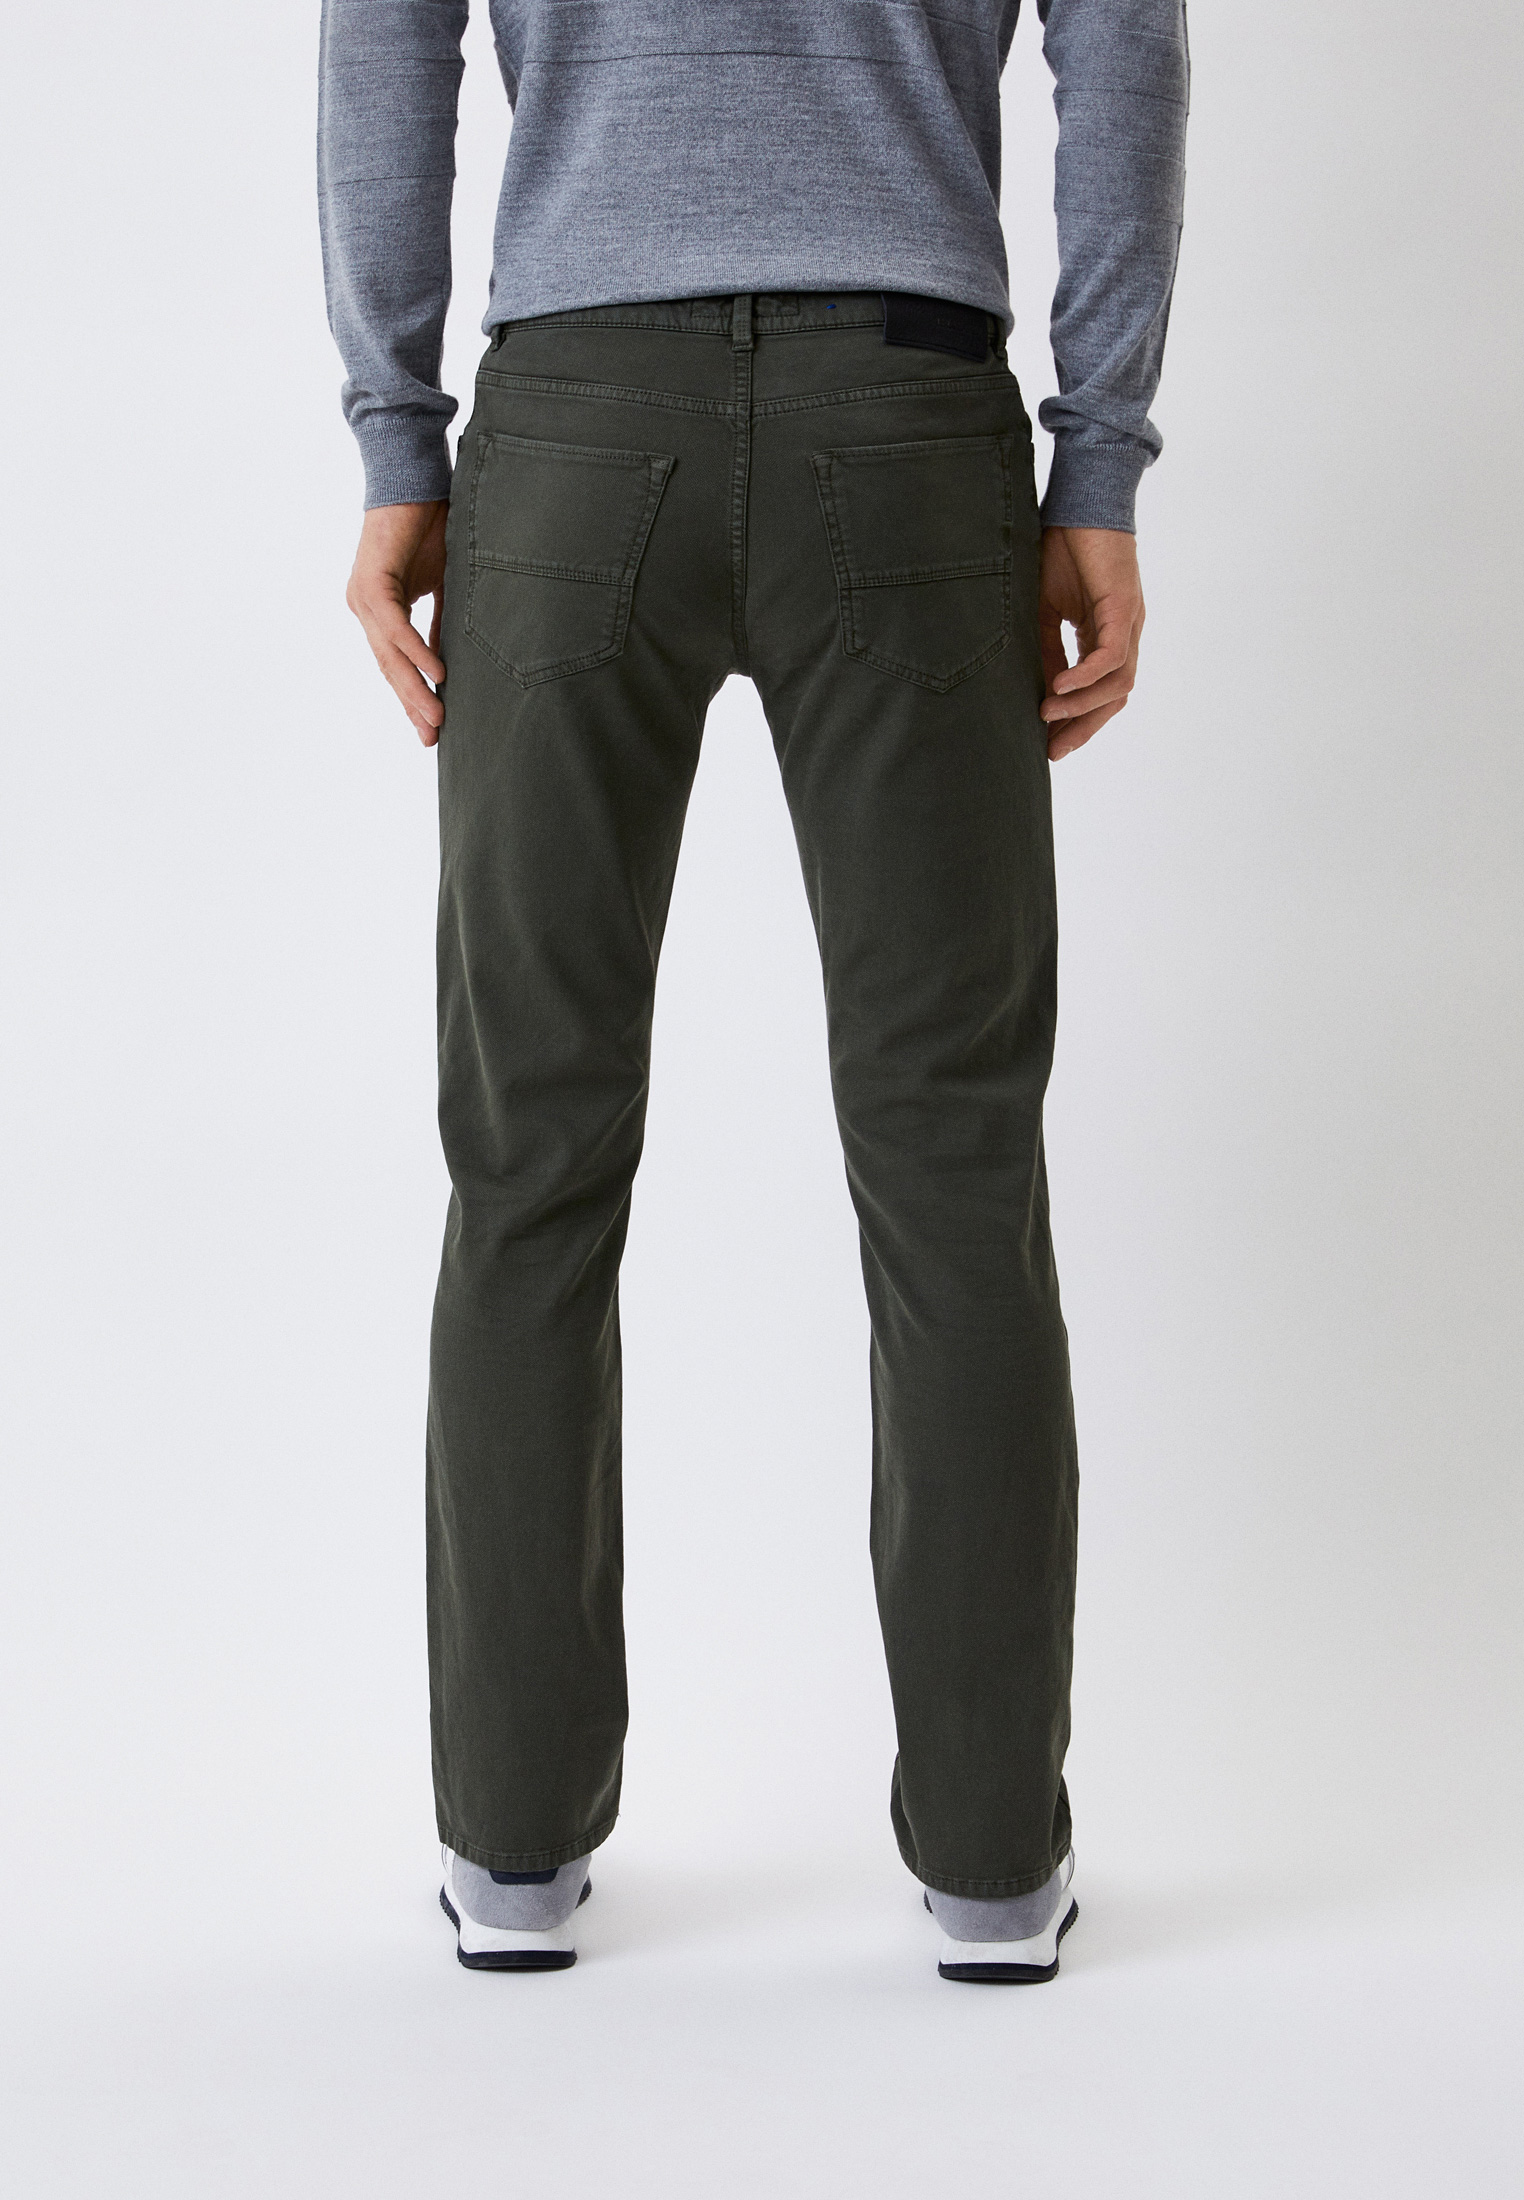 Мужские повседневные брюки Trussardi (Труссарди) 52J00004-1T003141-H-001: изображение 3